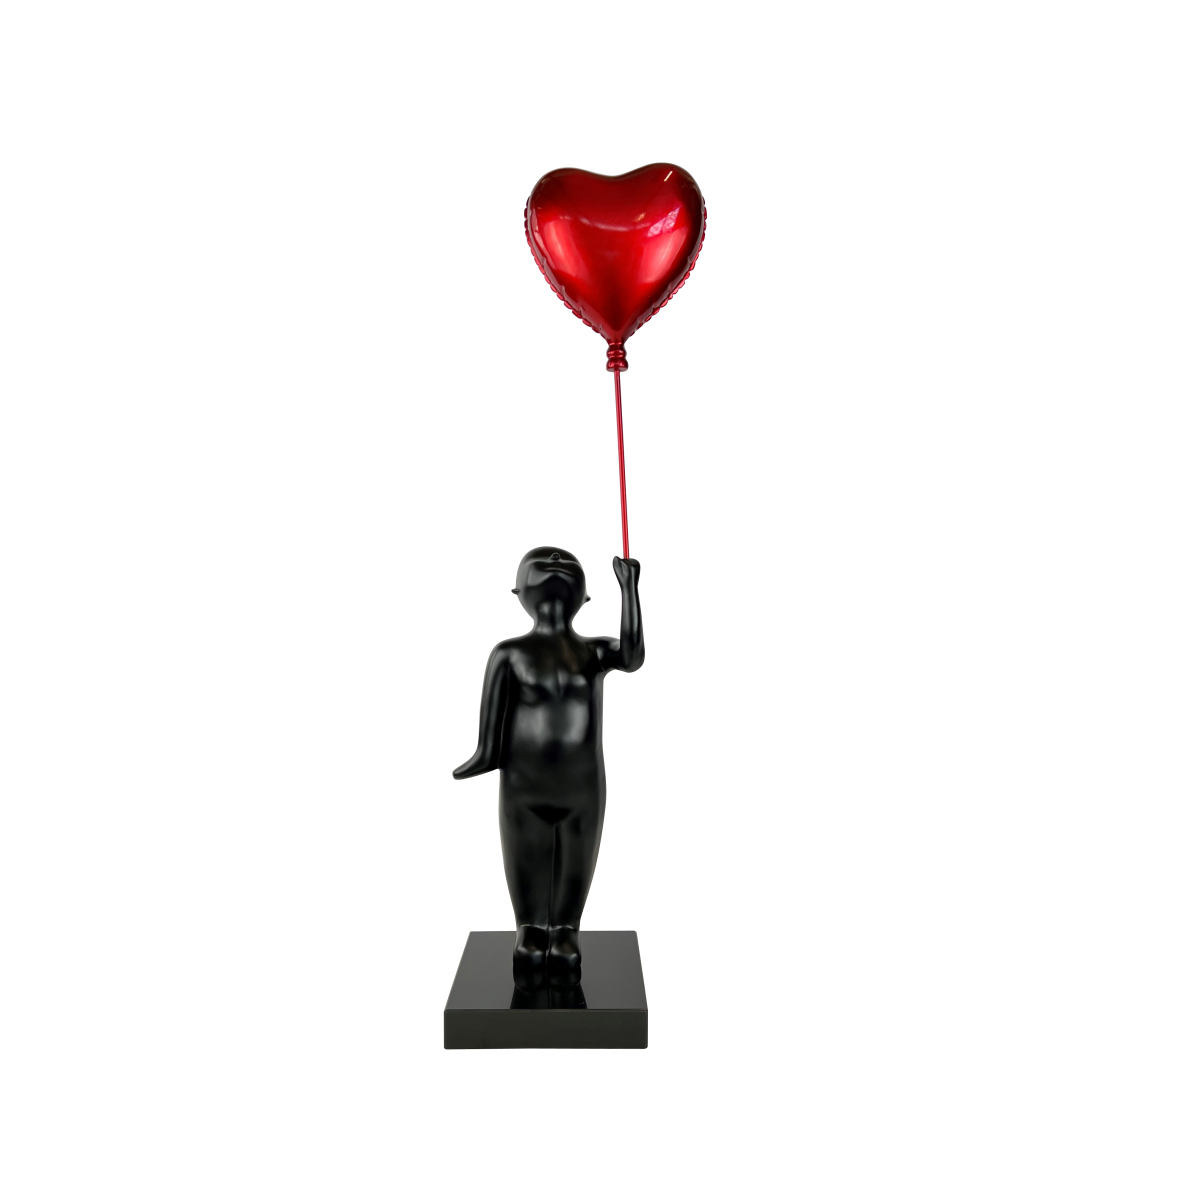 Ballon rouge avec des petits cœurs noirs